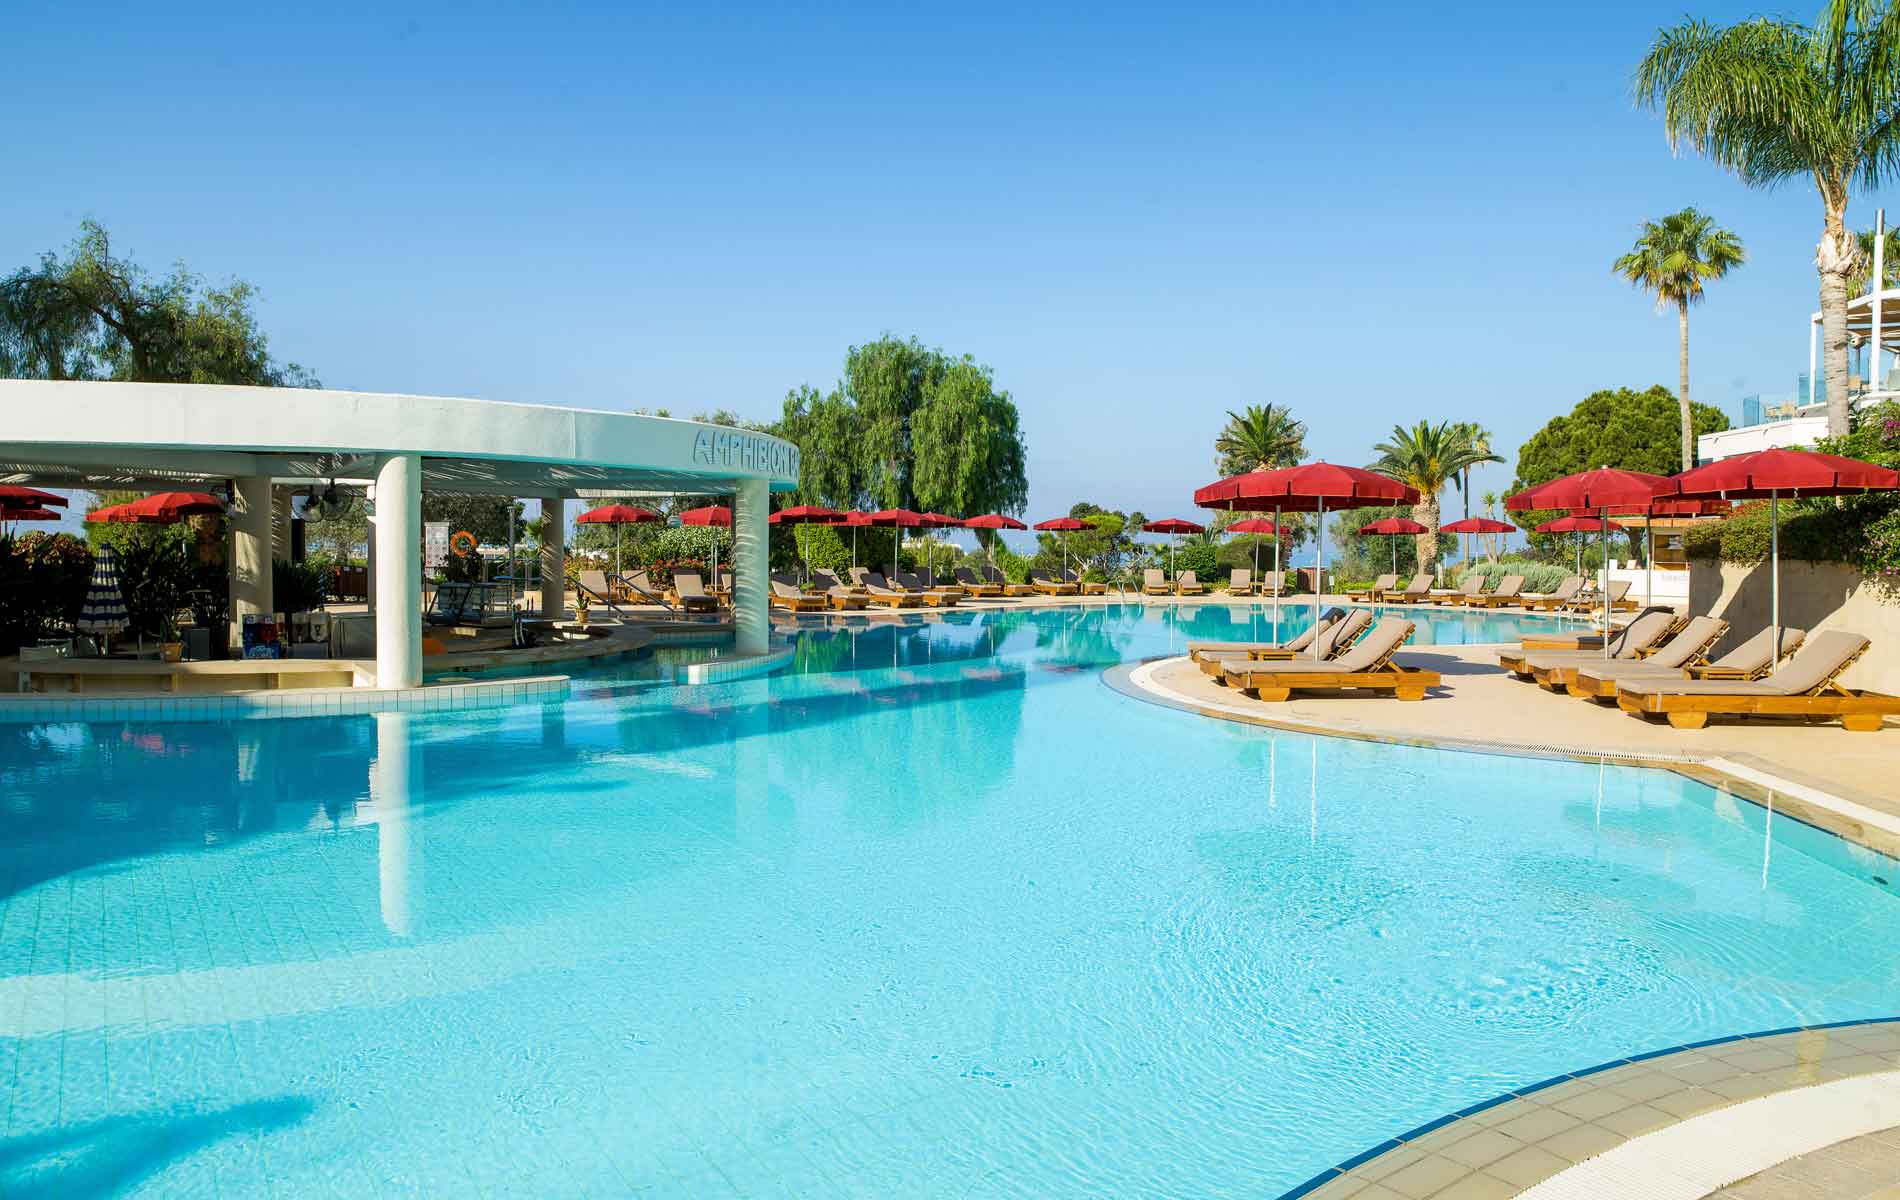 5* St Raphael Resort - Λεμεσός, Κύπρος ✦ 2 Ημέρες (1 Διανυκτέρευση) ✦ 2 άτομα ✦ 2 ✦ 23/02/2023 έως 31/10/2023 ✦ Κοντά σε παραλία!